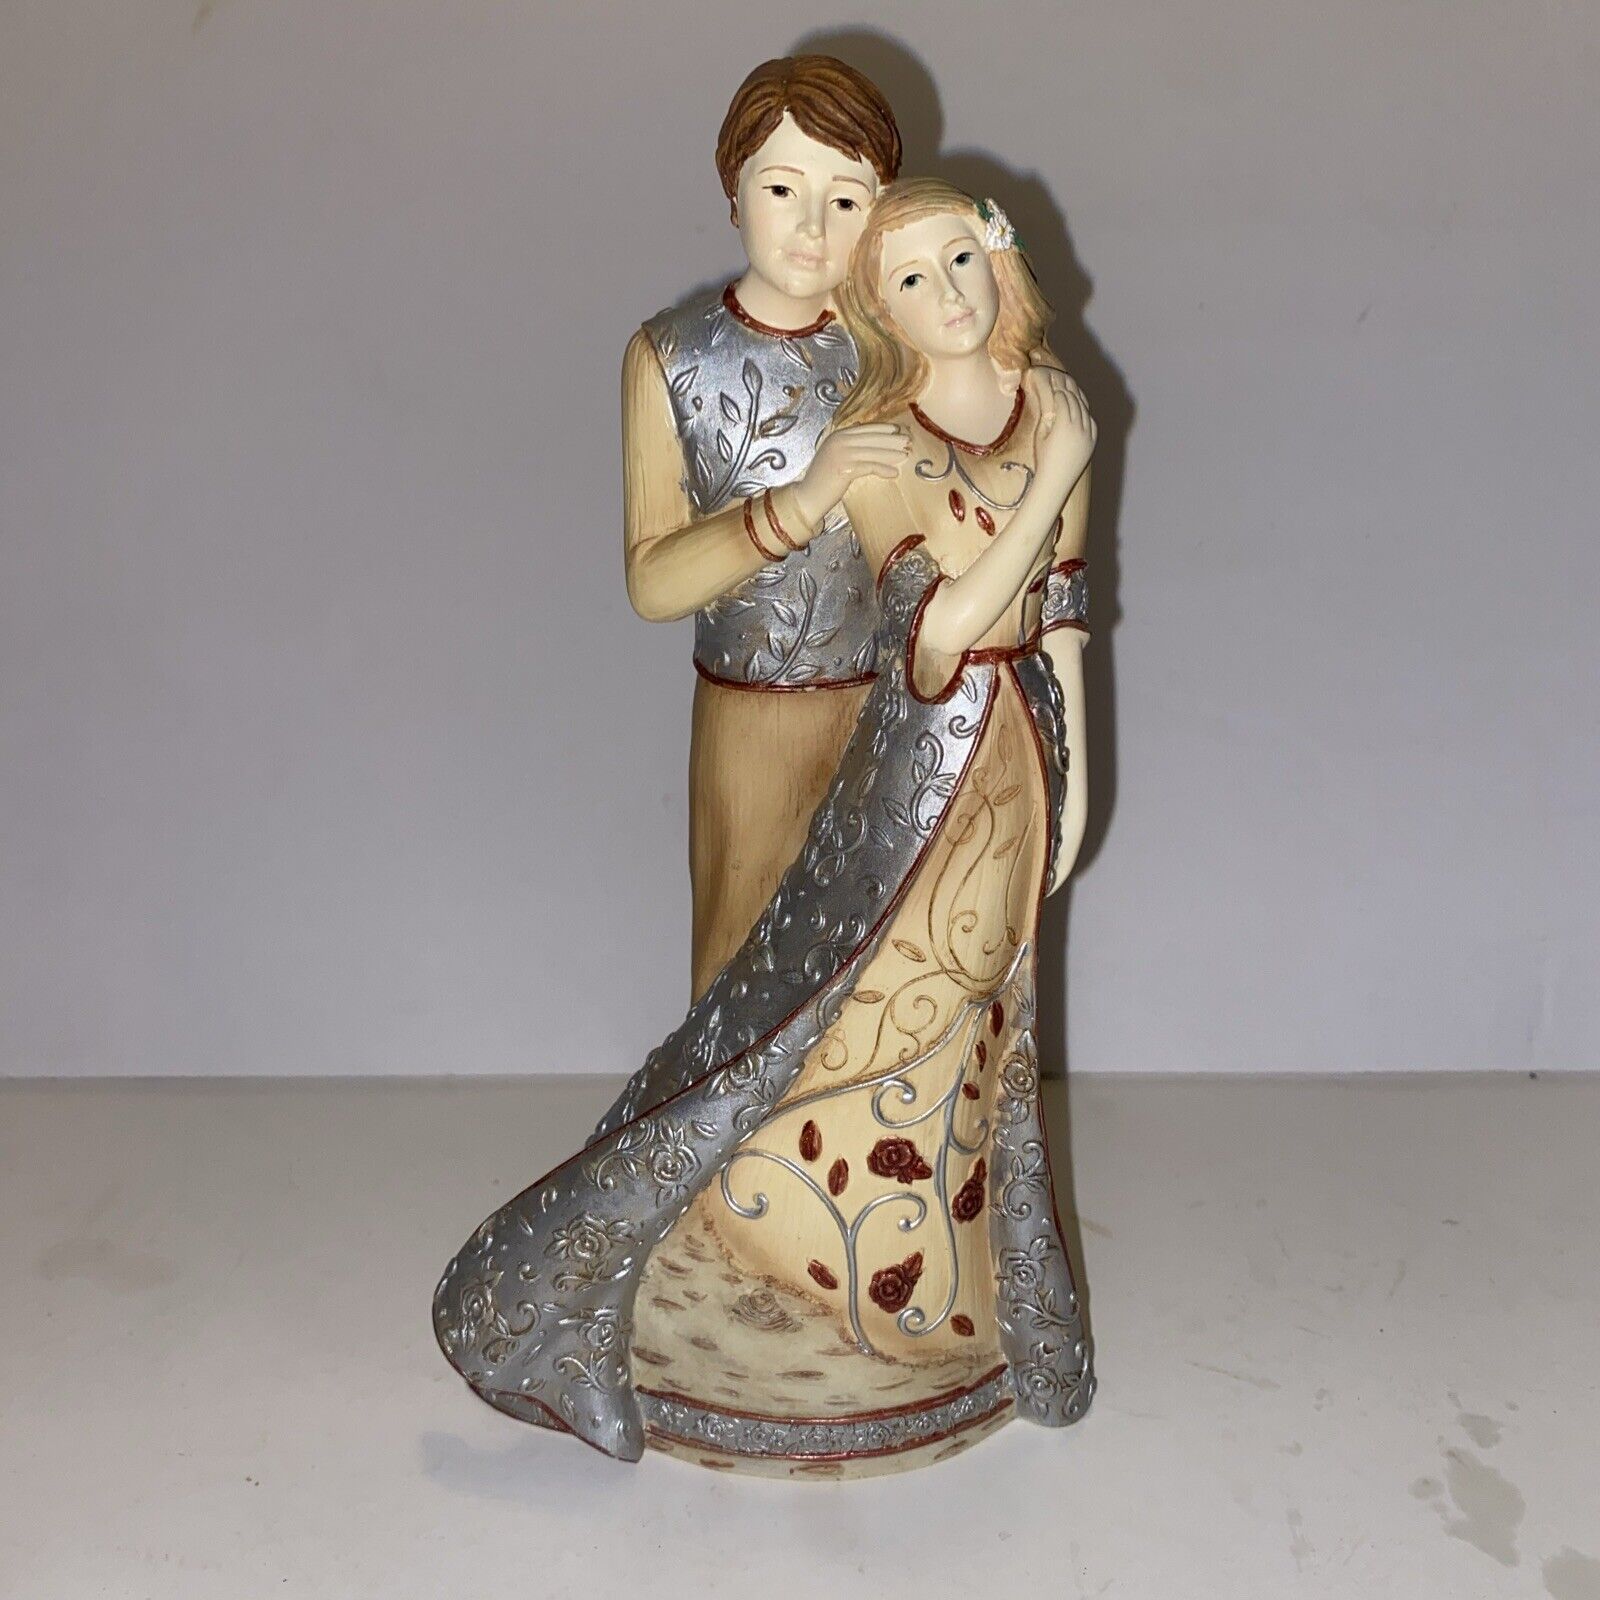 Pavilion - Elements “True Love” Figurine 82175  2009 Man Woman Couple